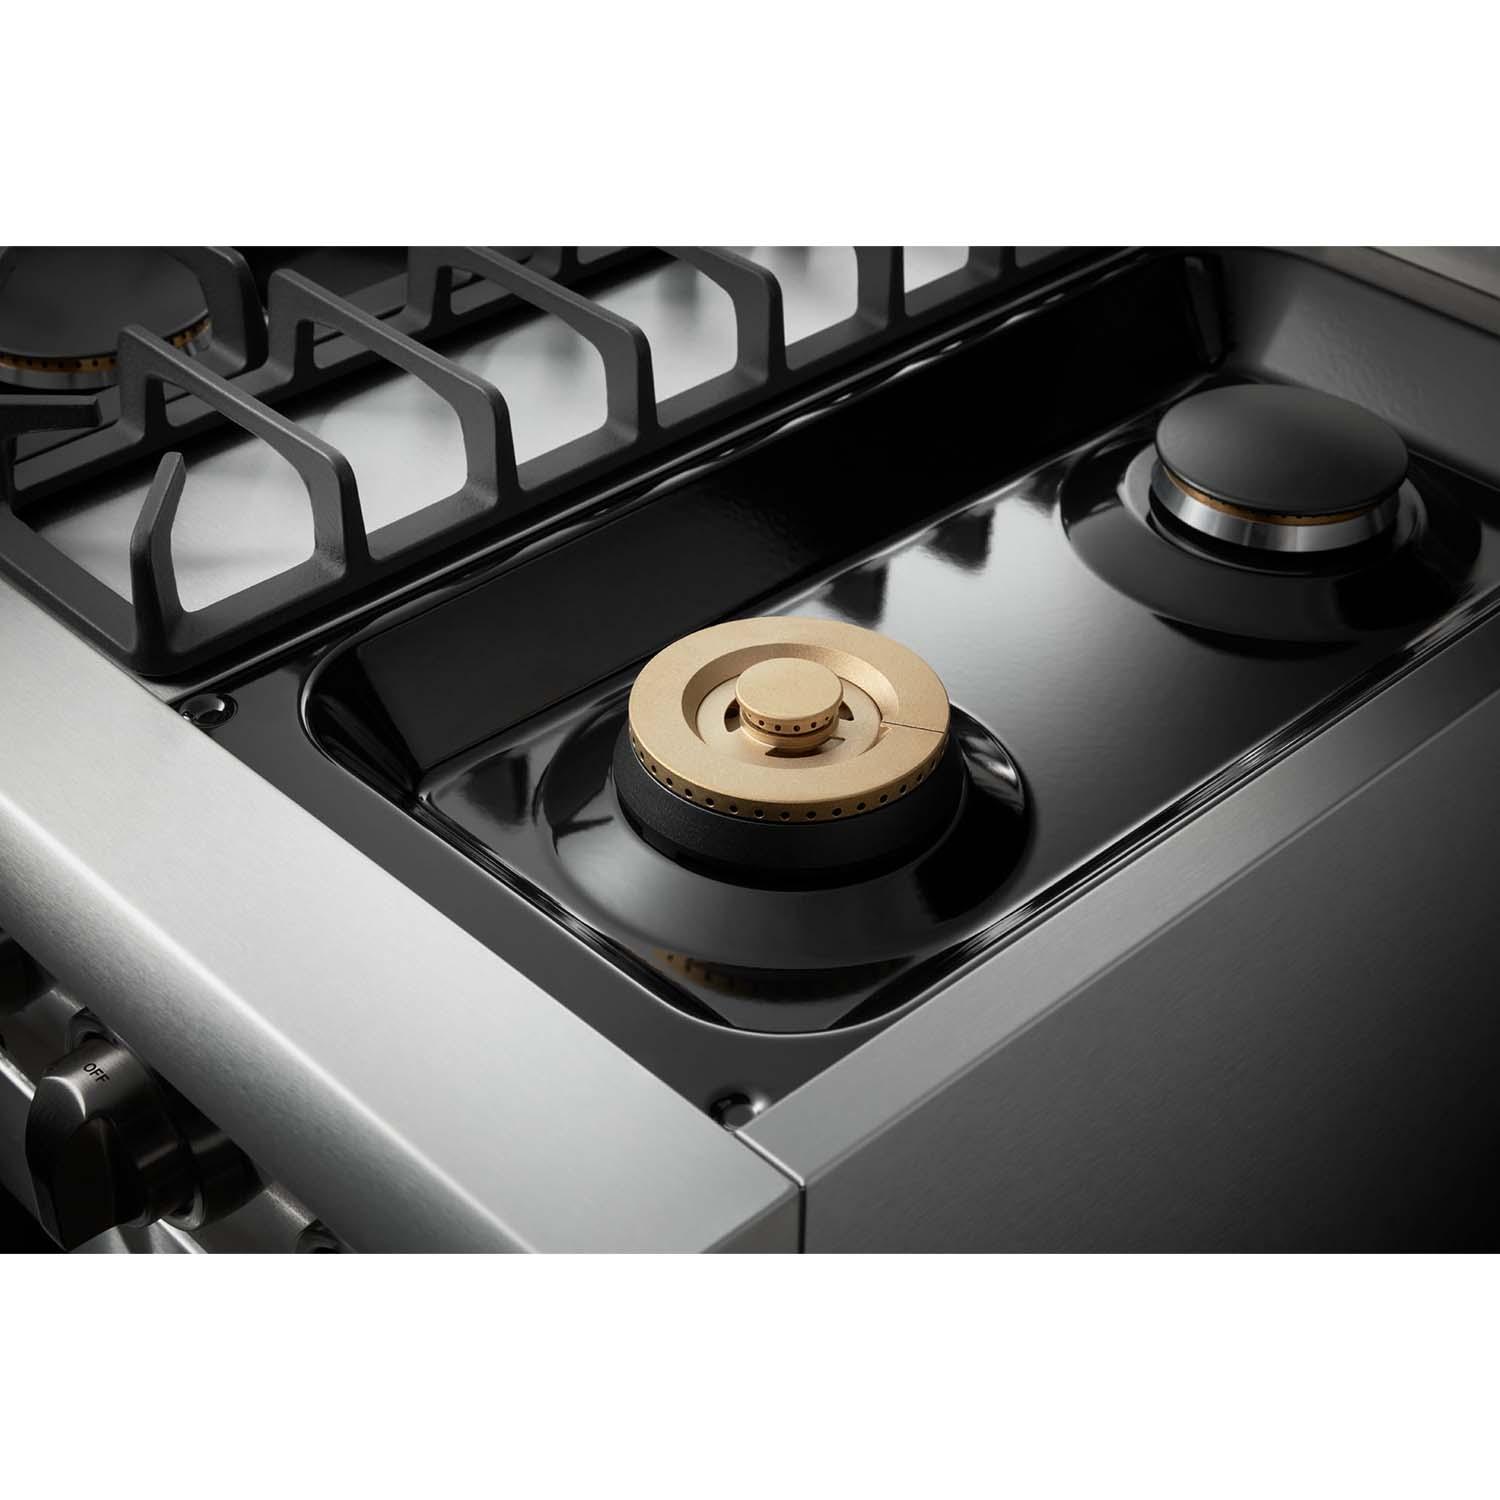 Thor Kitchen 30-inch Professional Gas Range - Hrg3080u/hrg3080ulp